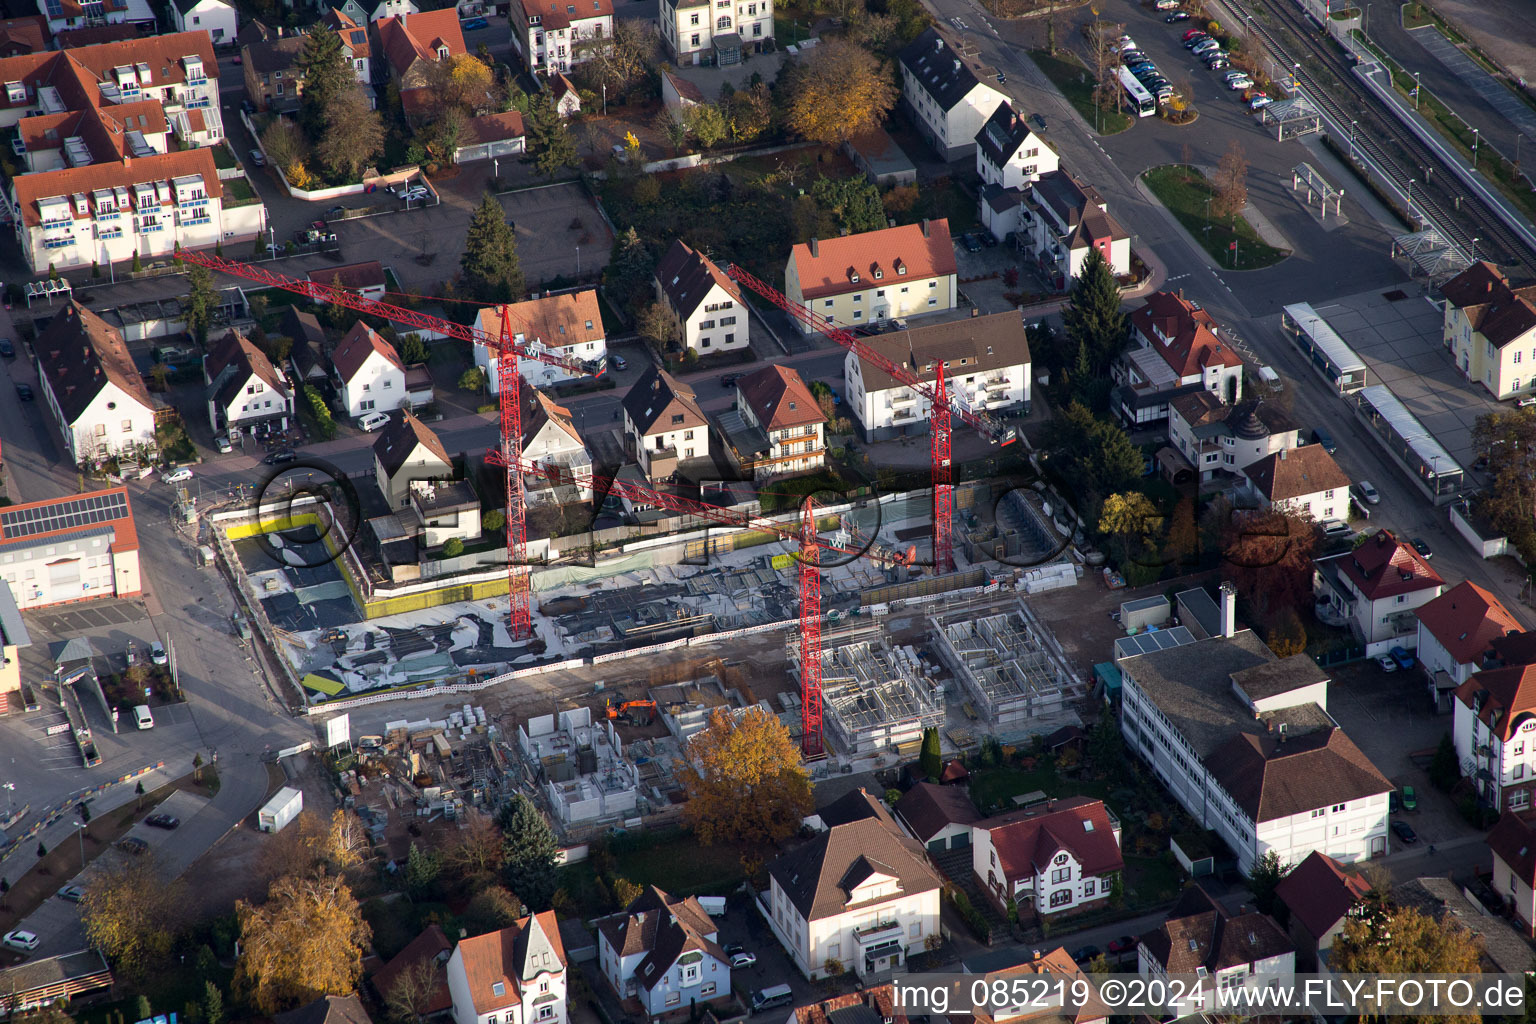 Neubaugebiet "Im Stadtkern" zw. Bismarck- und Gartenstr in Kandel im Bundesland Rheinland-Pfalz, Deutschland aus der Luft